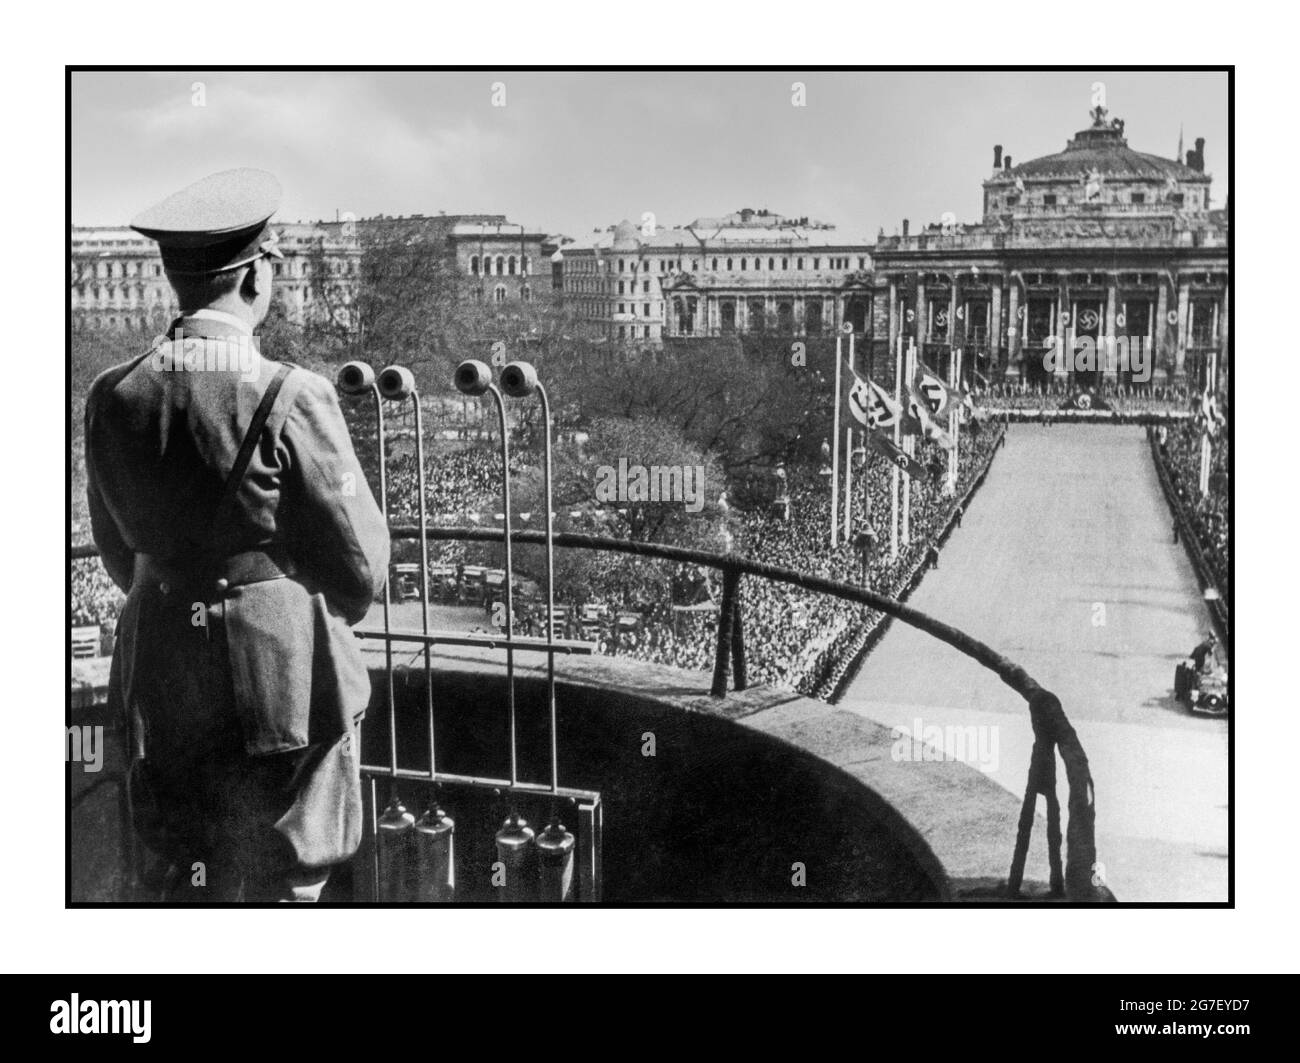 ADOLF HITLER MICROPHONES VIENNE AUTRICHE APRÈS ANSCHLUSS MARS 15 1938 Adolf Hitler en uniforme s'adresse aux viennois du balcon de l'hôtel de ville de Vienne aidé par des microphones de diffusion le 15 mars 1938 à Vienne, Autriche. L'annexion d'Anschluss a eu lieu le 12 mars 1938 Banque D'Images